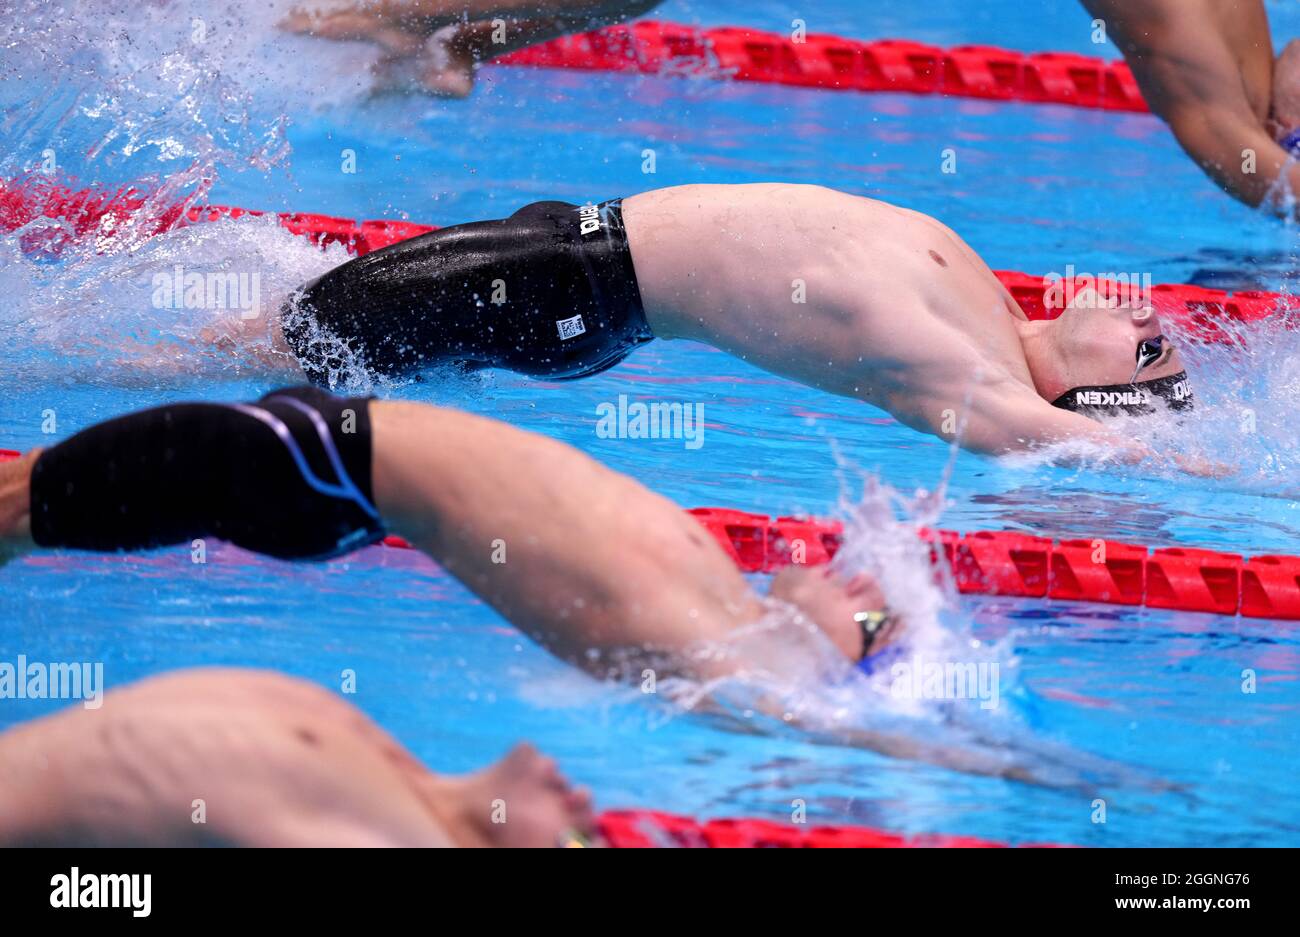 Le Bas Takken des pays-Bas participe à la finale Homme de course de fond de 100m - S10 au Centre aquatique de Tokyo au cours du neuvième jour des Jeux paralympiques de Tokyo de 2020 au Japon. Date de la photo : jeudi 2 septembre 2021. Banque D'Images